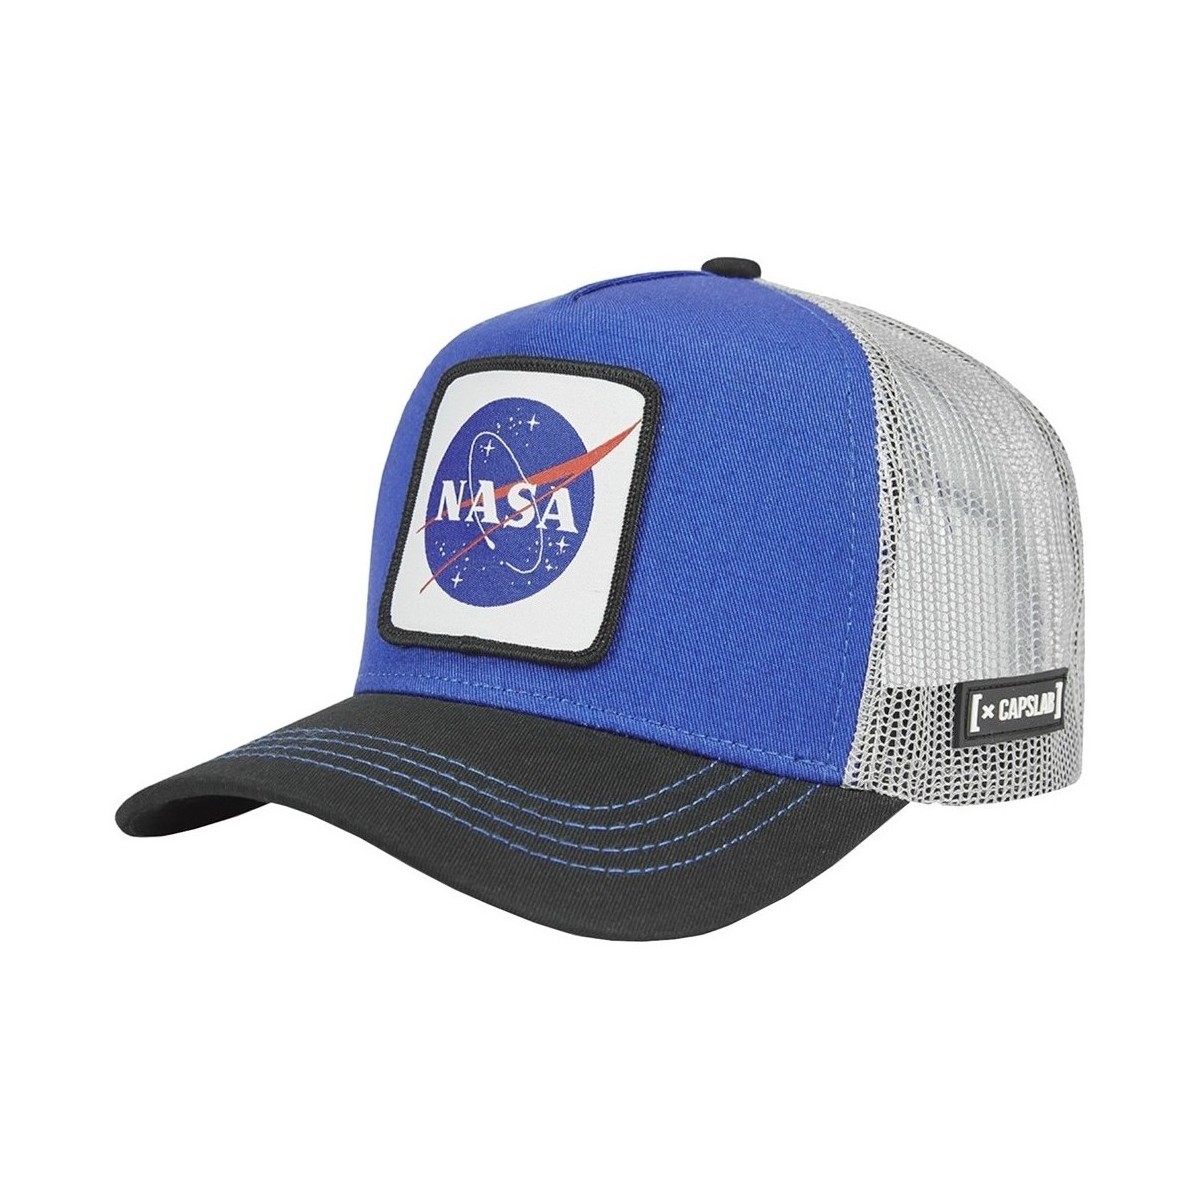 Textil kiegészítők Férfi Baseball sapkák Capslab Space Mission Nasa Kék